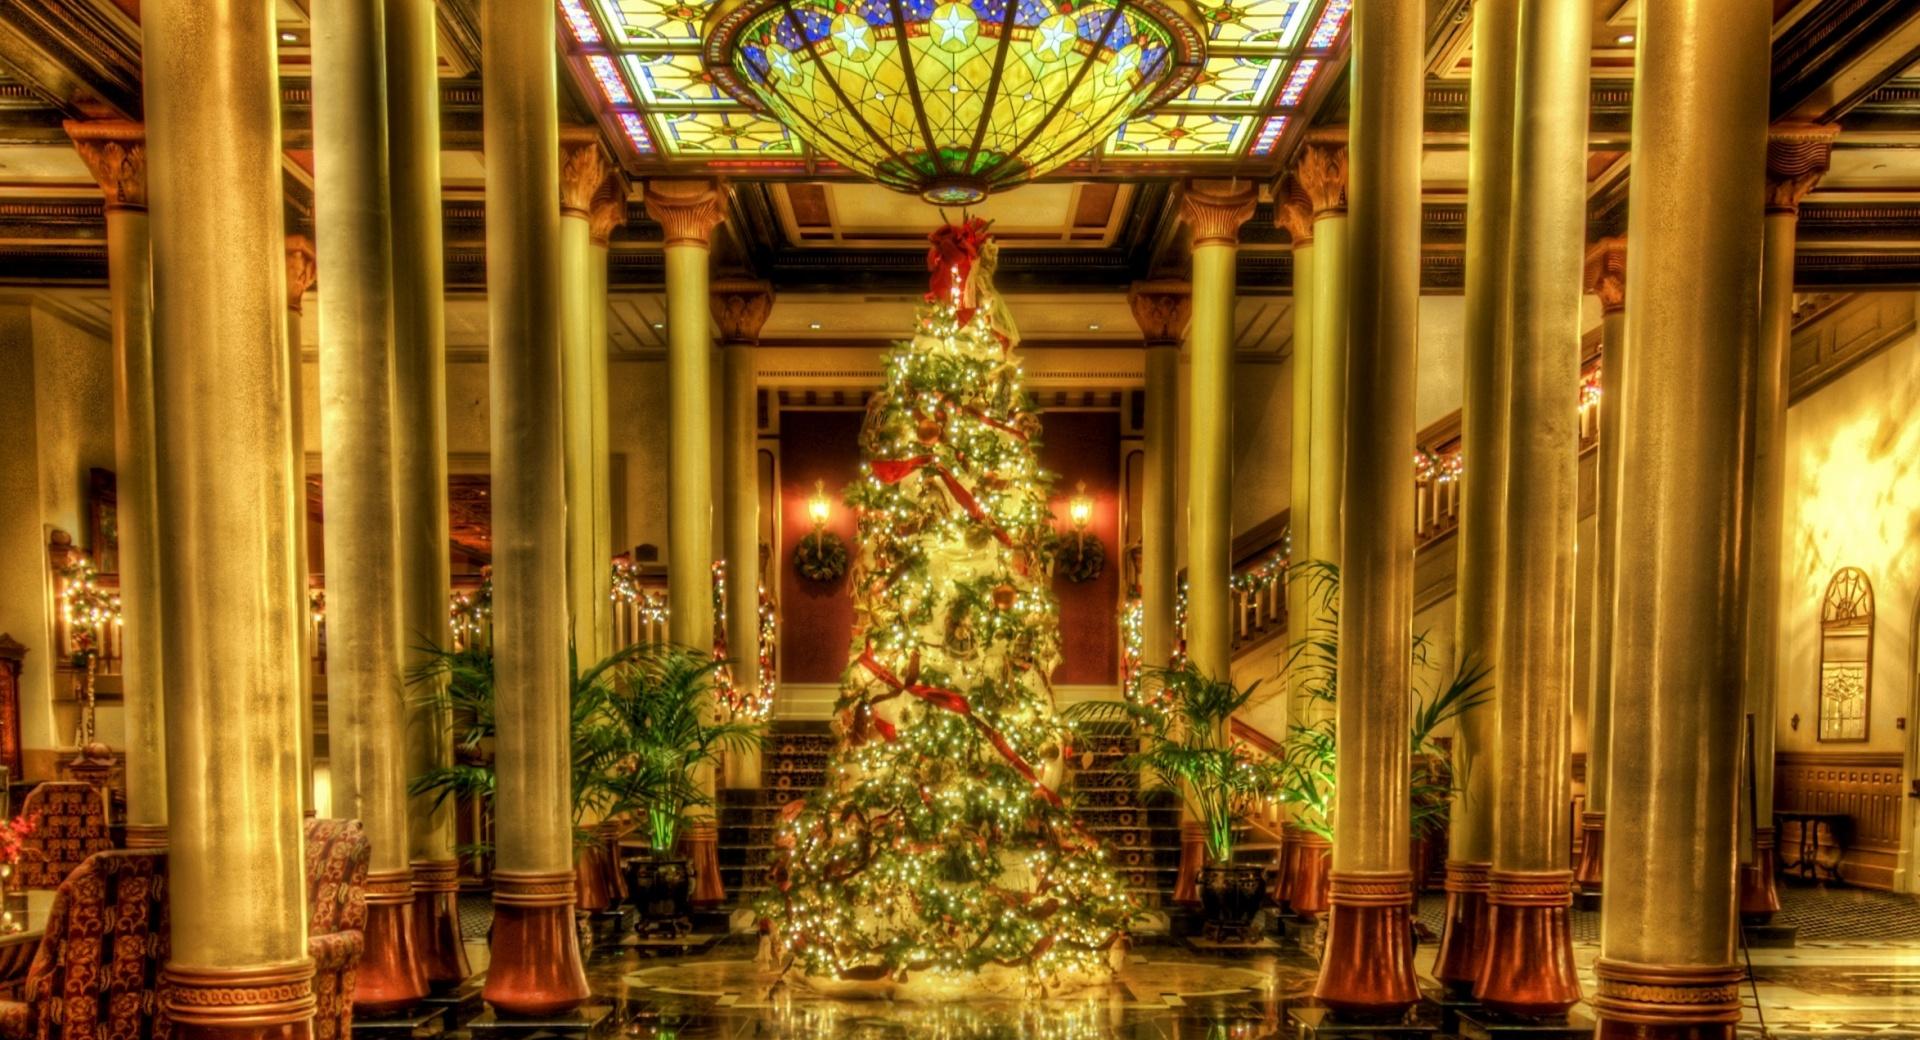 Christmas - Driskill Hotel Lobby, Texas wallpapers HD quality